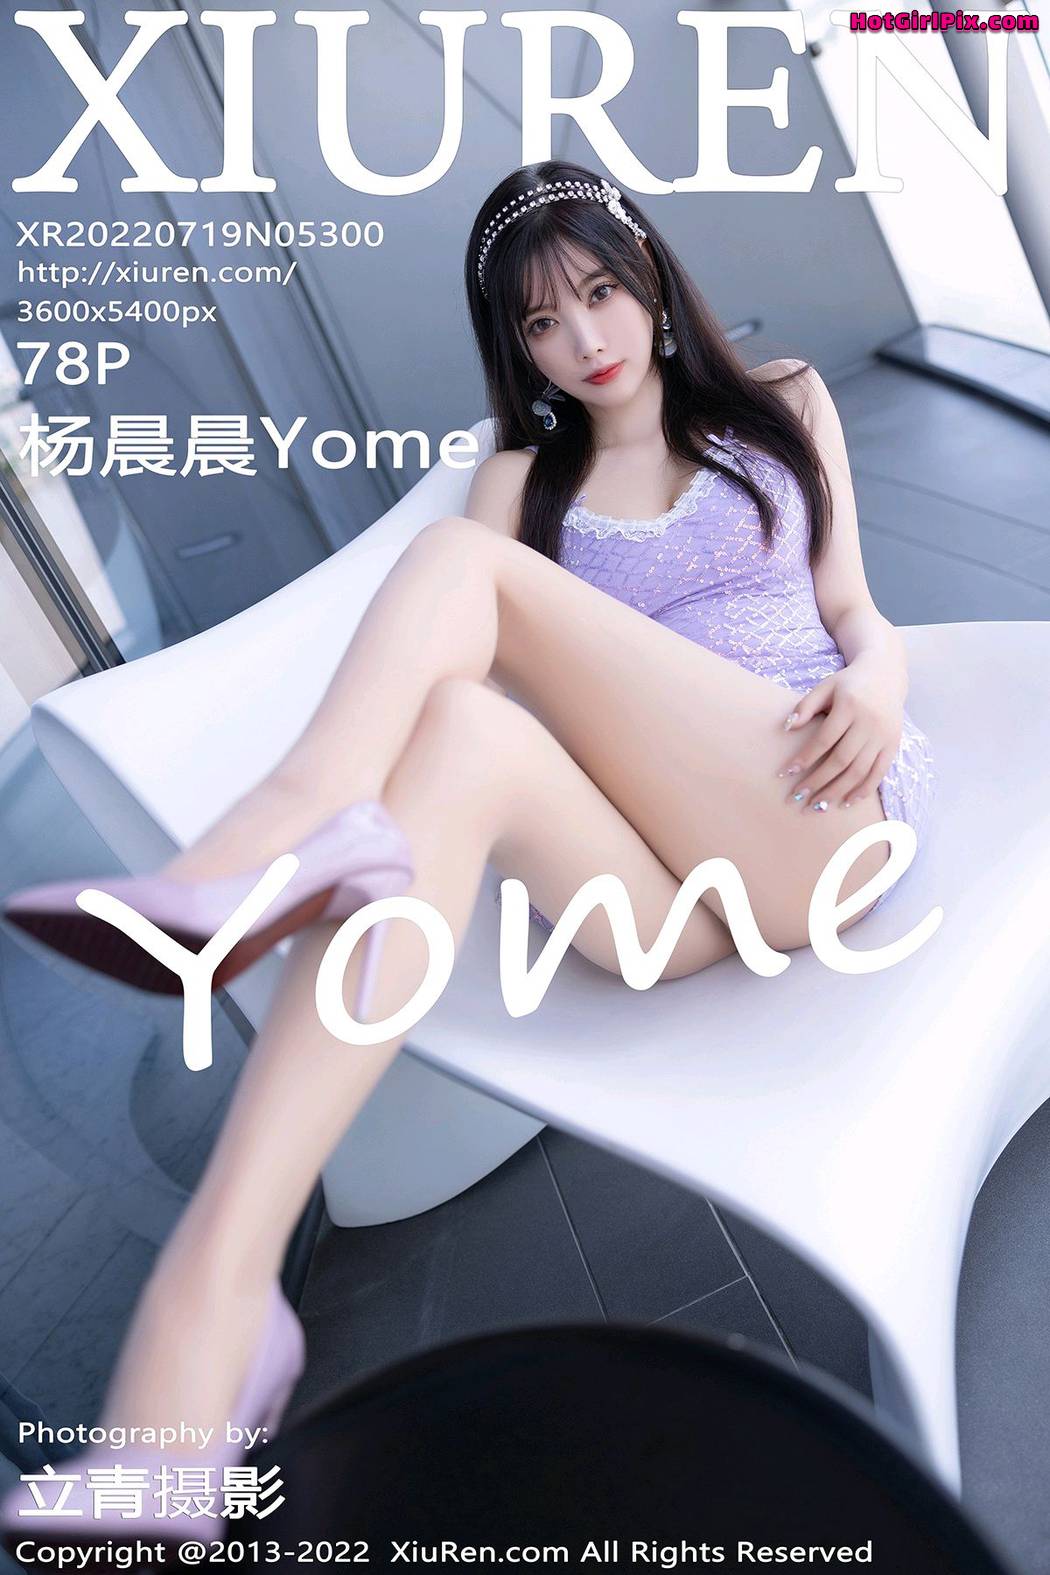 [XIUREN] No.5300 Yang Chen Chen 杨晨晨Yome (Yang Chen Chen 杨晨晨sugar) Cover Photo